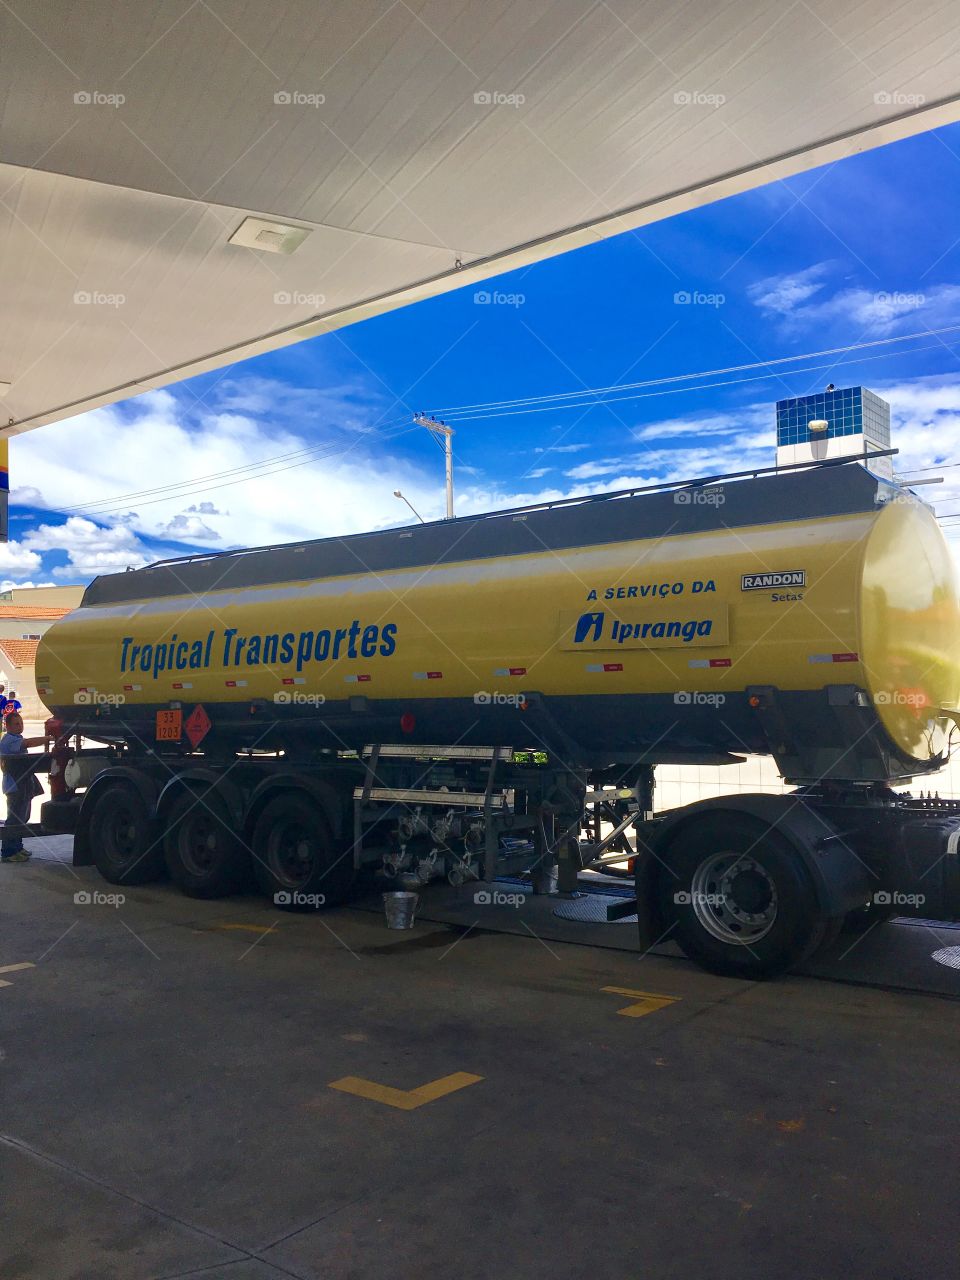 Aqui no Posto Harmonia garantimos a #qualidade dos nossos combustíveis da Ipiranga!
Recebemos #gasolina e #etanol à vista dos clientes.
⛽️ 
#Respeito